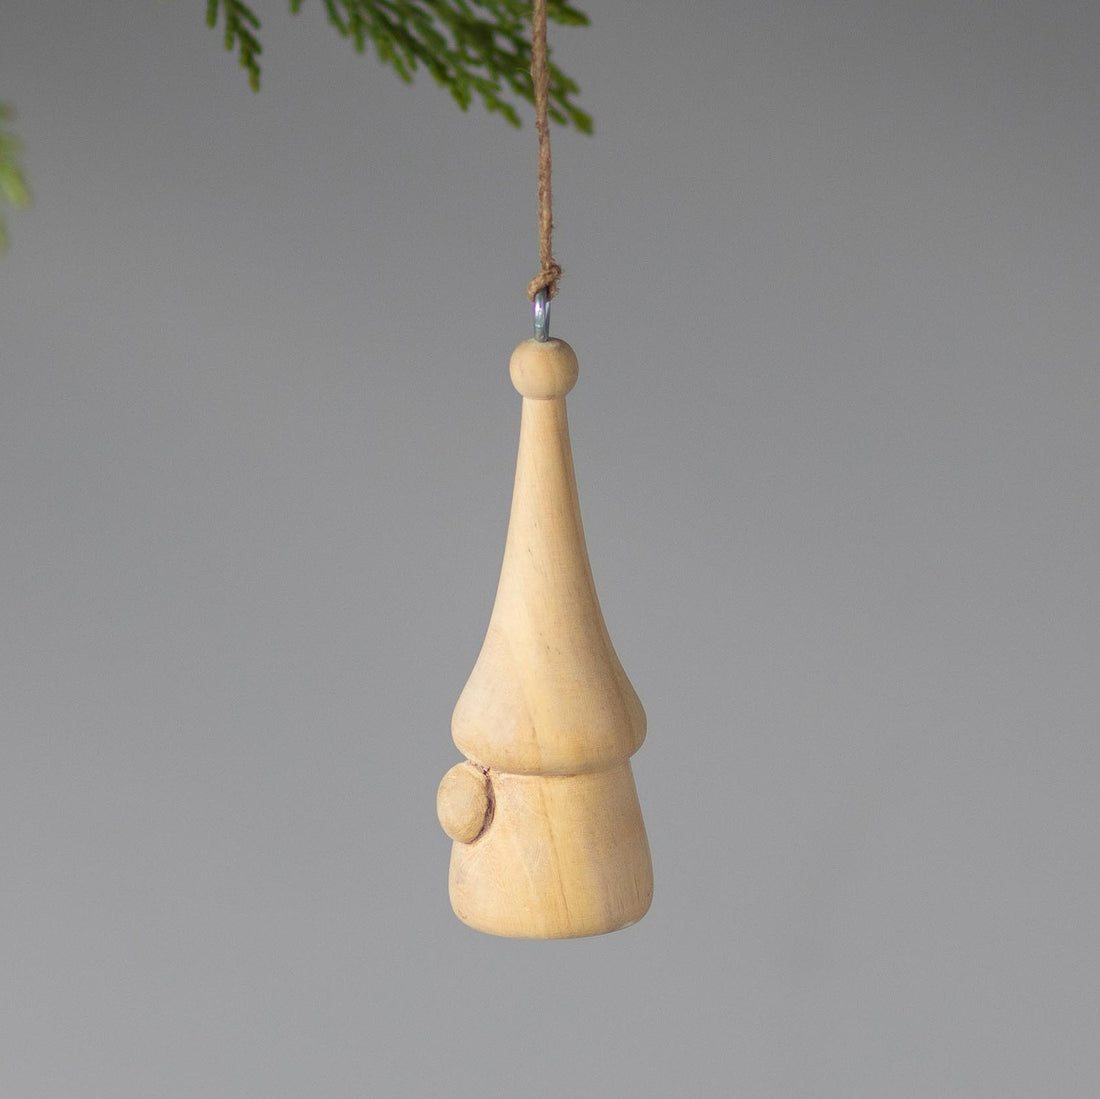 Pine Gnome Ornament